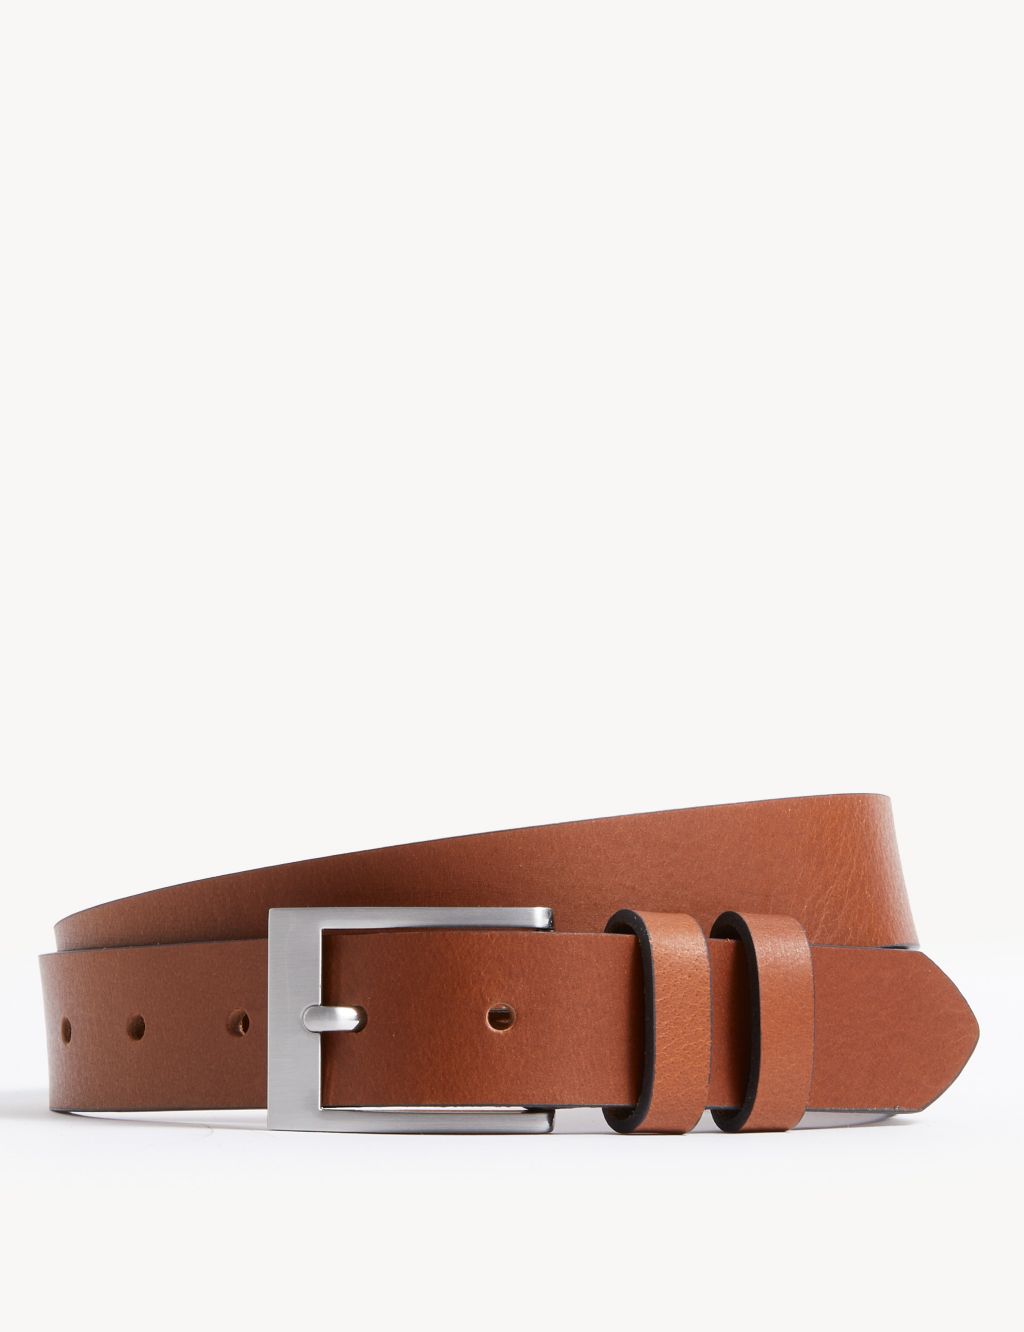 Leather Belt image 1